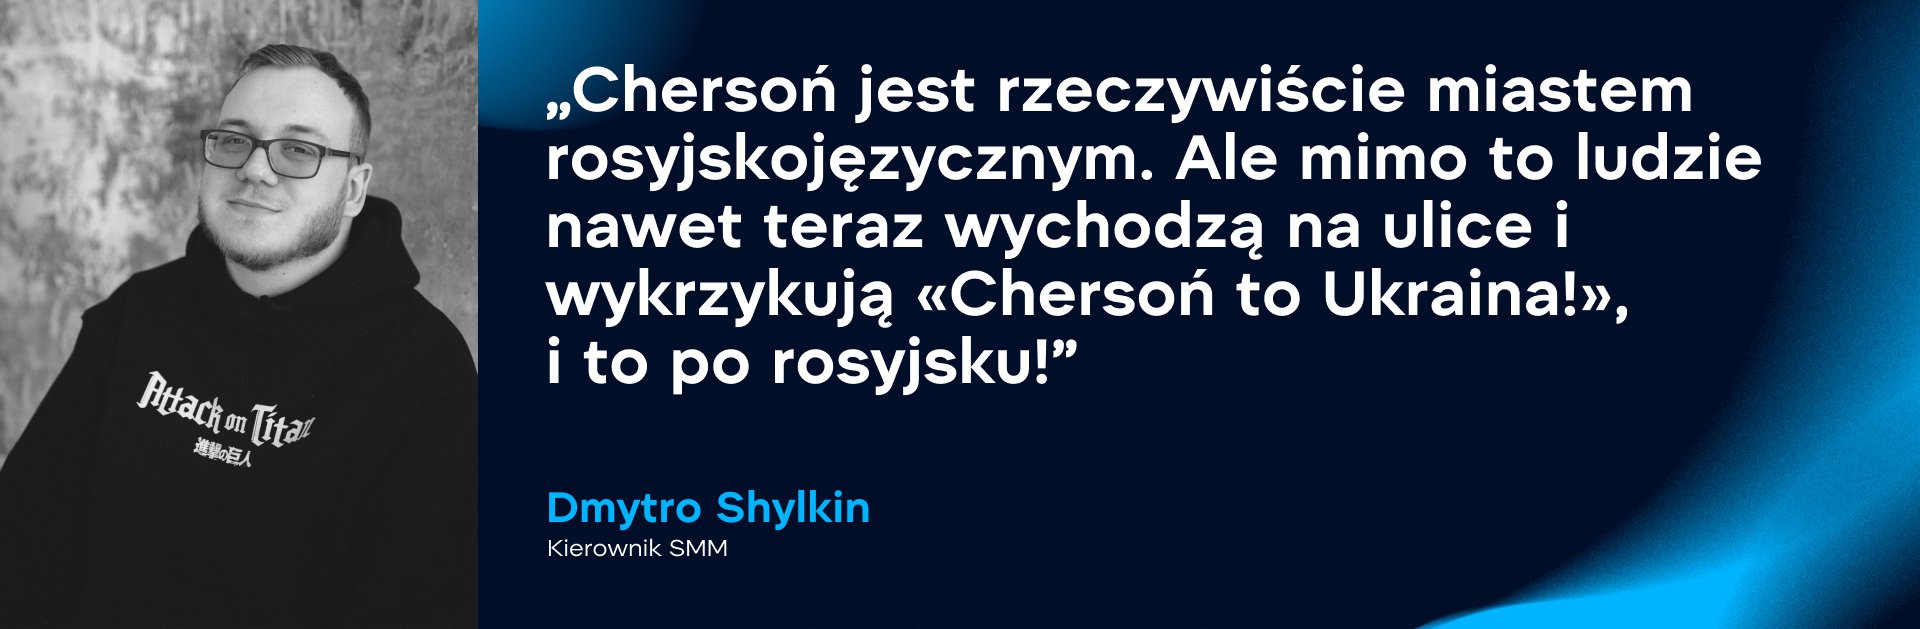 Dmytro Shylkin, kierownik SMM. Zdjęcie: WePlay Holding